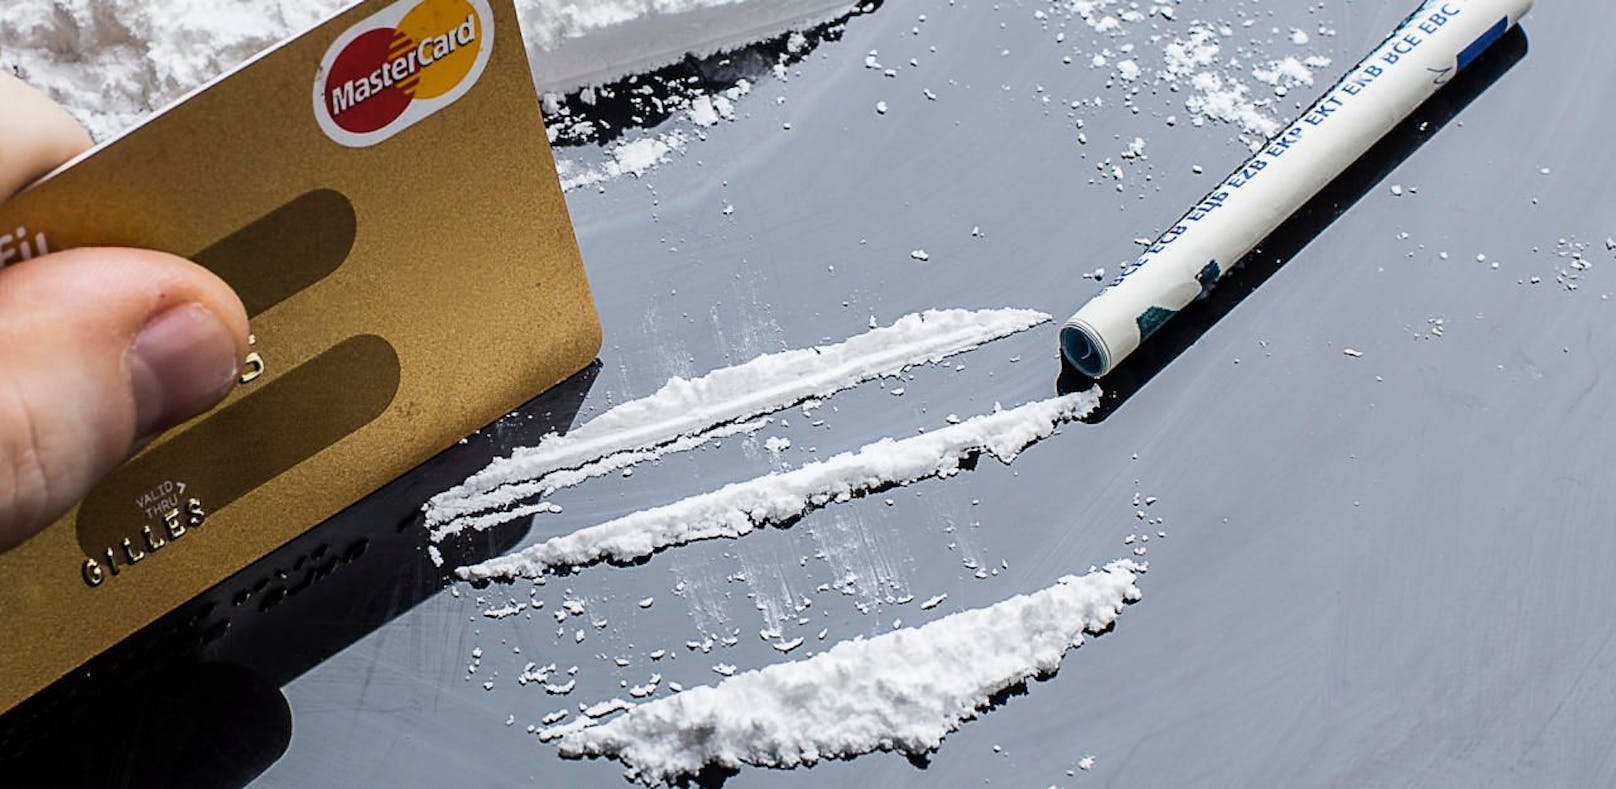 Auch in seiner Wohnung fand die Polizei Kokain. (Symbolfoto)